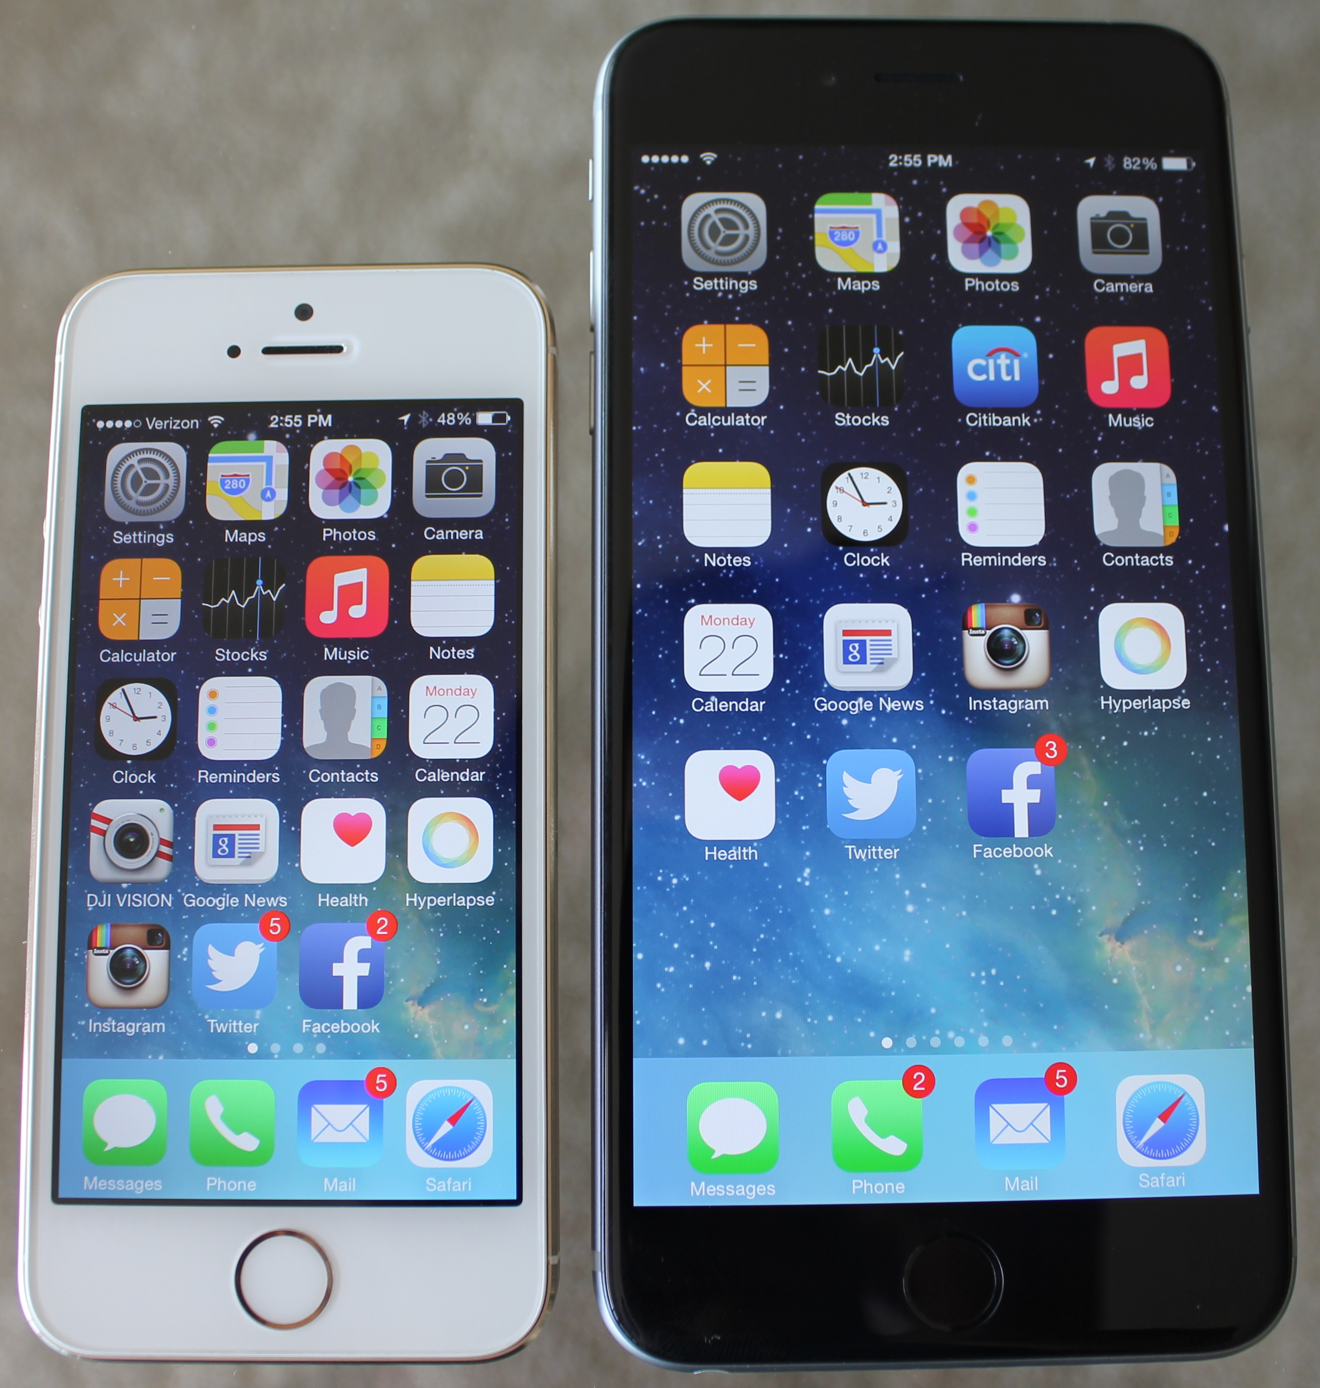 So sánh iPhone 4s vs iPhone 5 về cấu hình, giá cả - Fptshop.com.vn